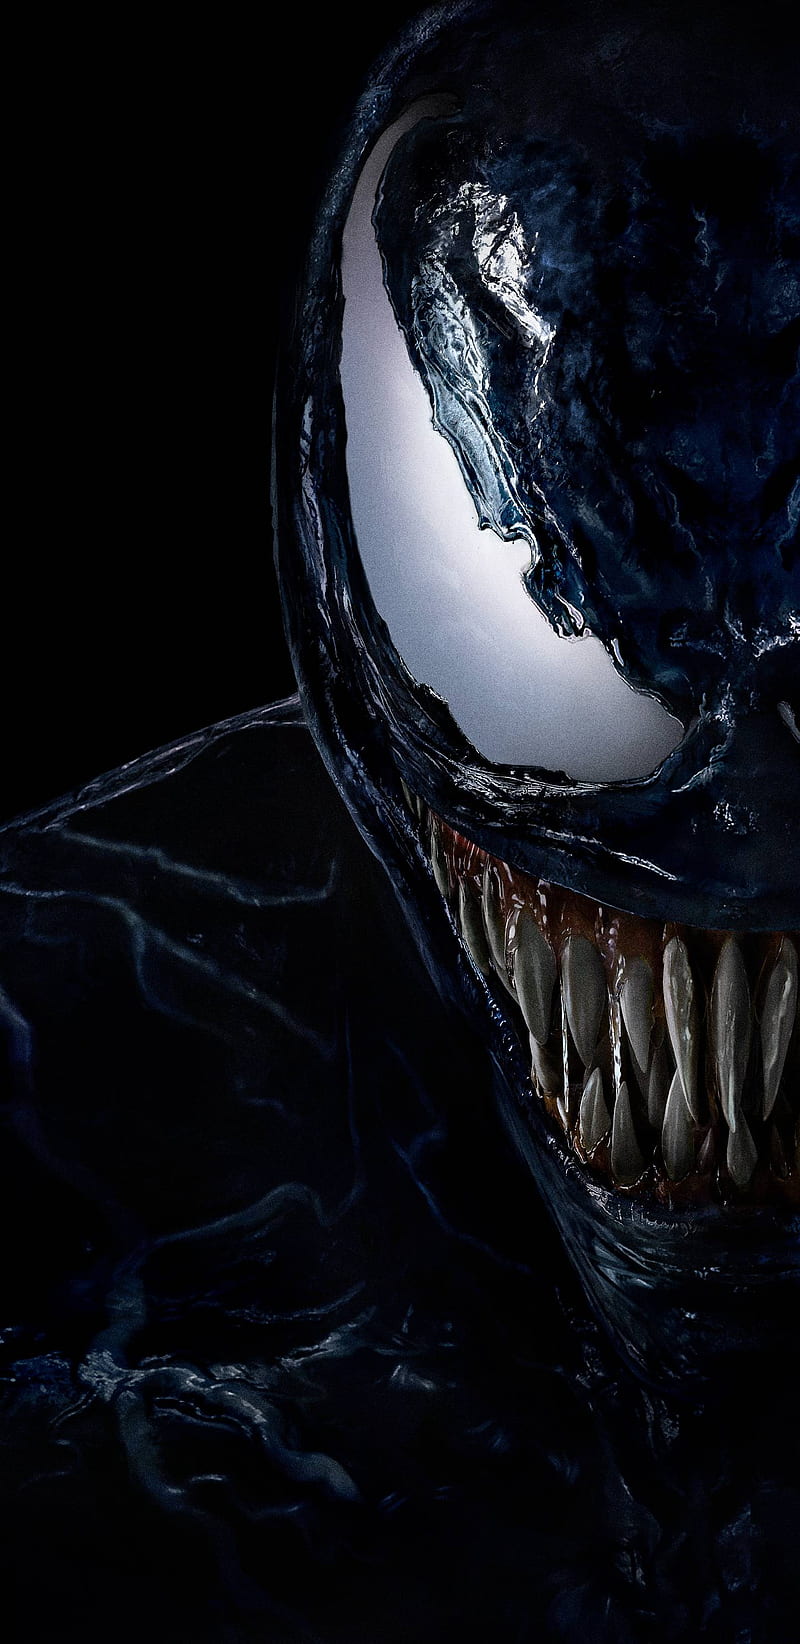 Symbiote là một trong những bộ phim giải trí được mong chờ nhất năm nay, đánh dấu sự trở lại của siêu anh hùng Venom. Hãy xem ảnh liên quan để đón chờ cho một phần phim đầy hứa hẹn.